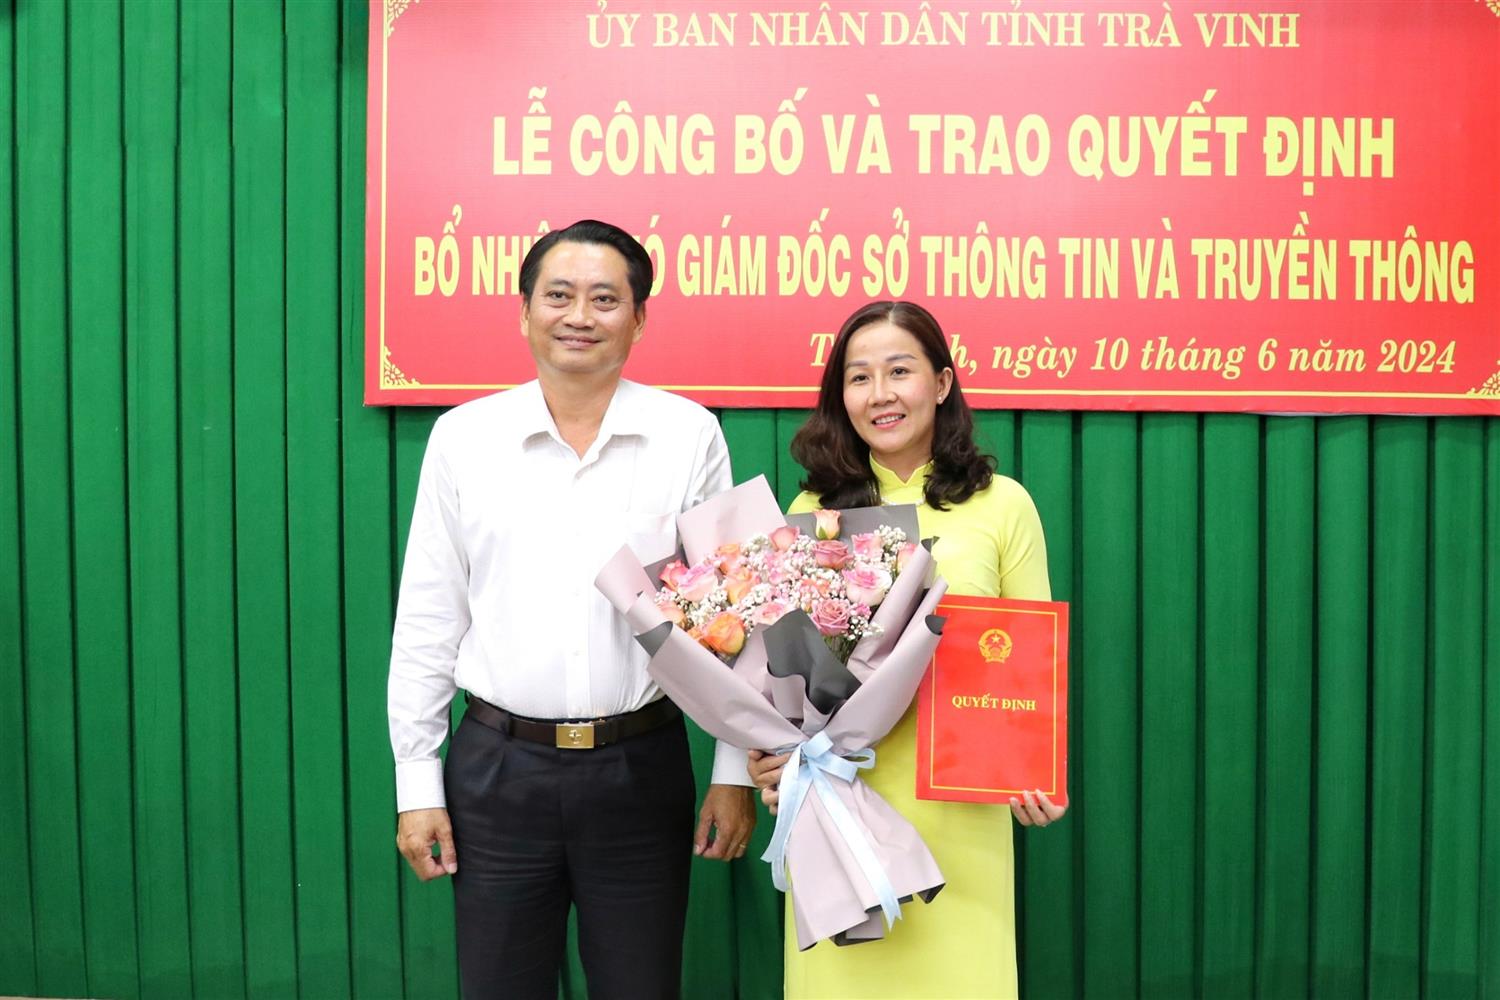 Bà Phạm Thị Mỹ Hạnh giữ chức Phó Giám đốc Sở Thông tin và Truyền thông Trà Vinh- Ảnh 1.